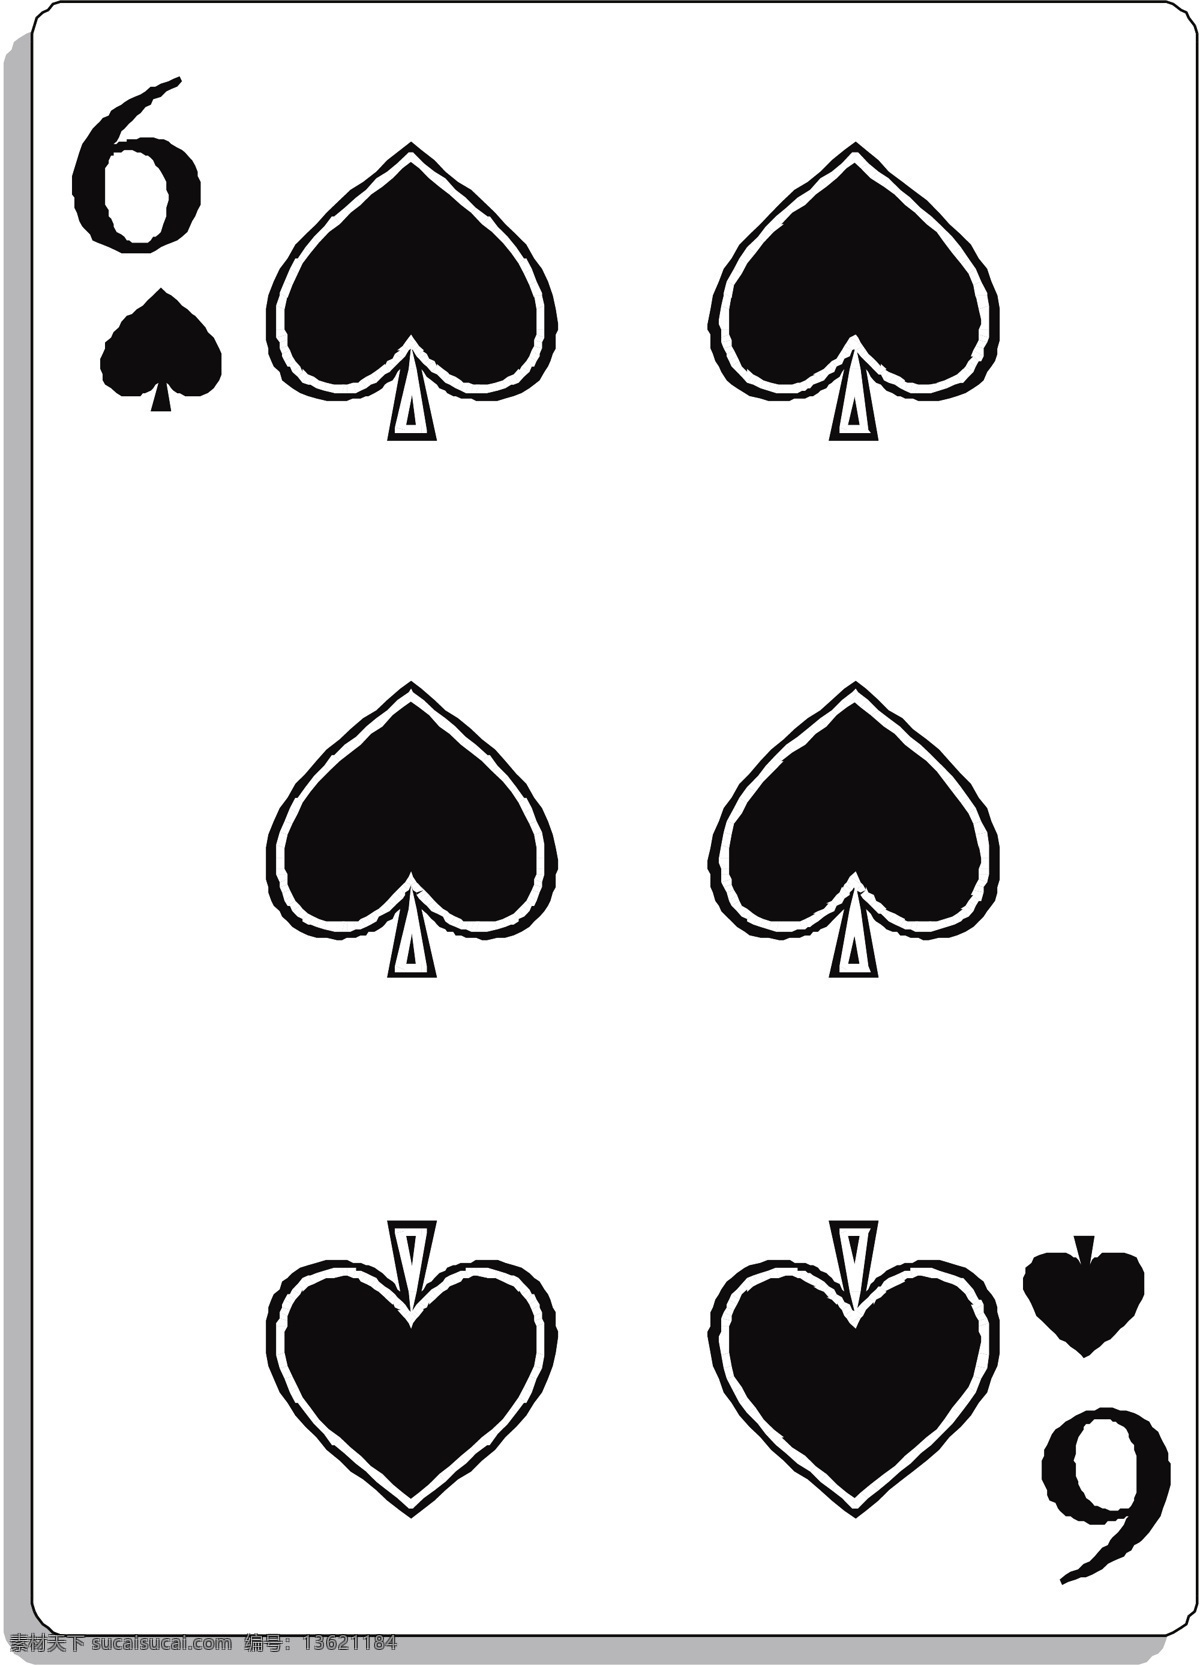 扑克牌矢量图 矢量下载 网页矢量 商业矢量 矢量运动 白色